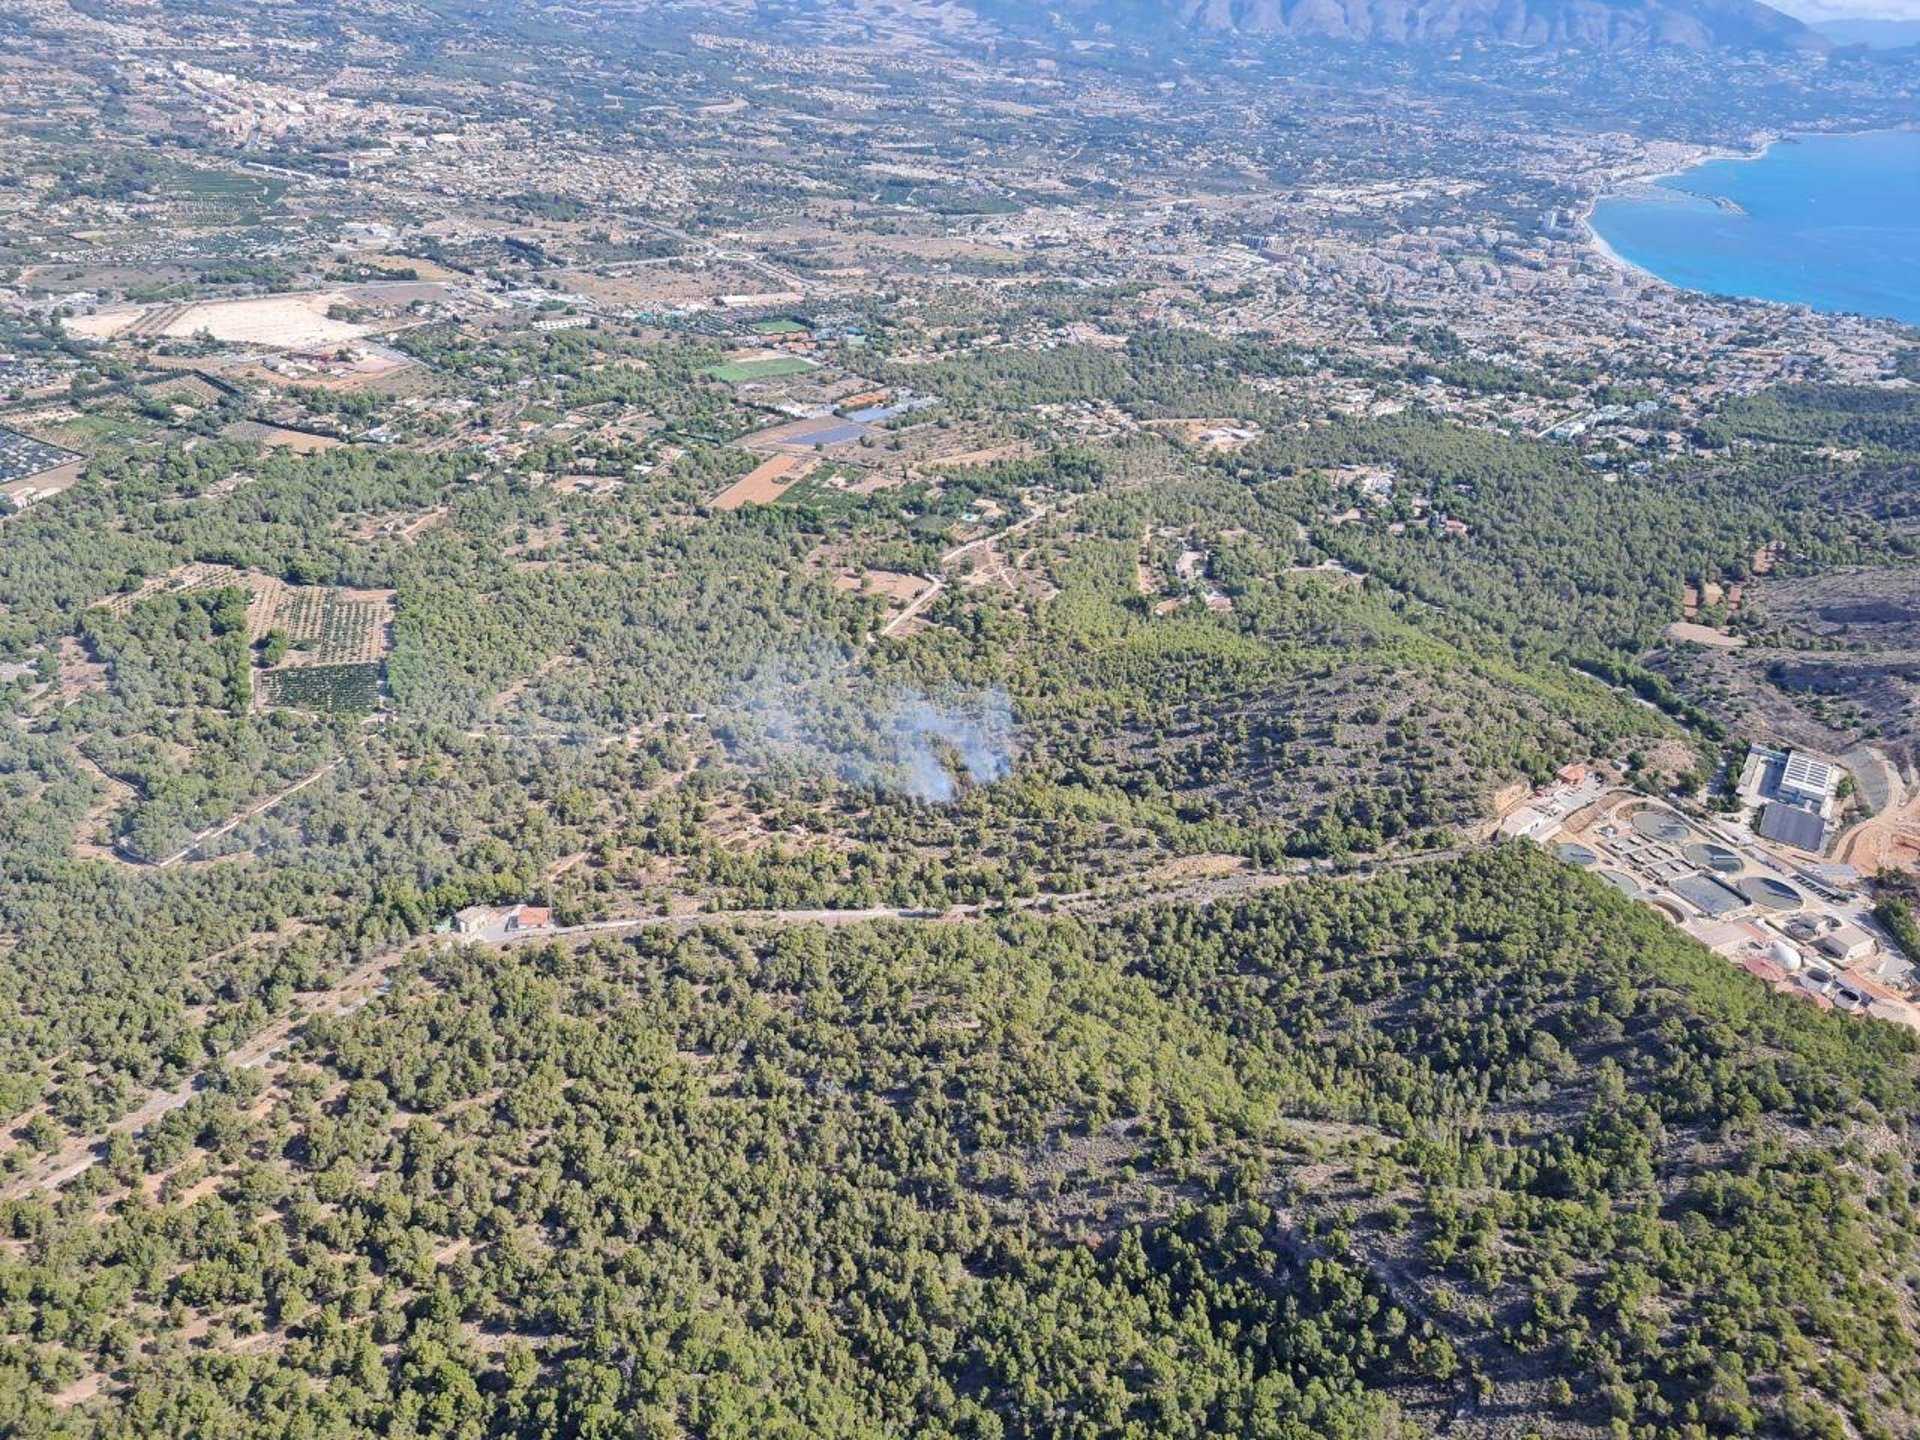 Un incendio forestal en parque natural de Serra Gelada en Benidorm obliga a activar la situación 1 del PEIF